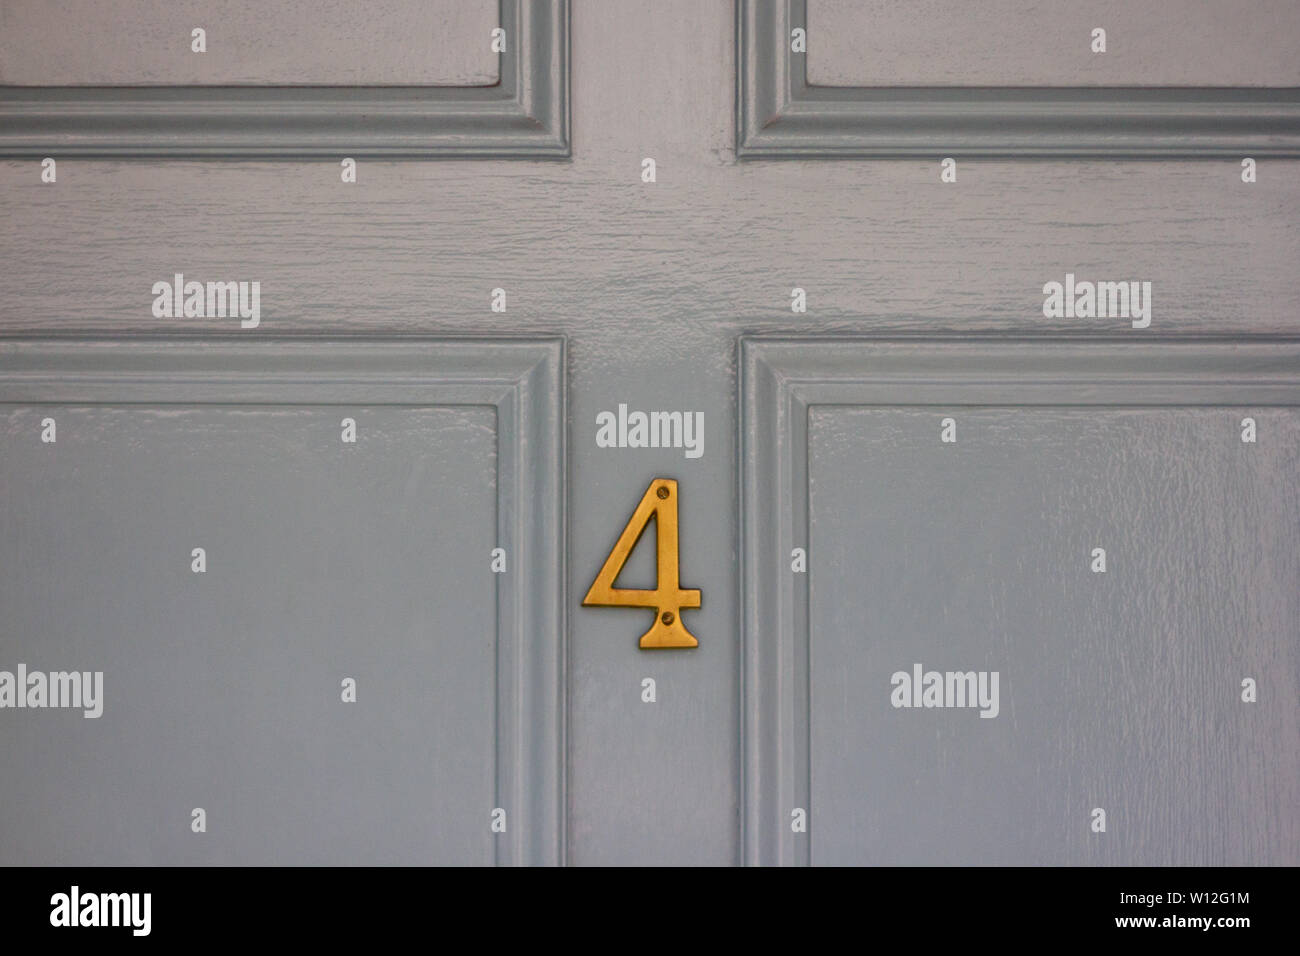 Número de casa 4 en la sección inferior de una luz gris puerta Foto de stock